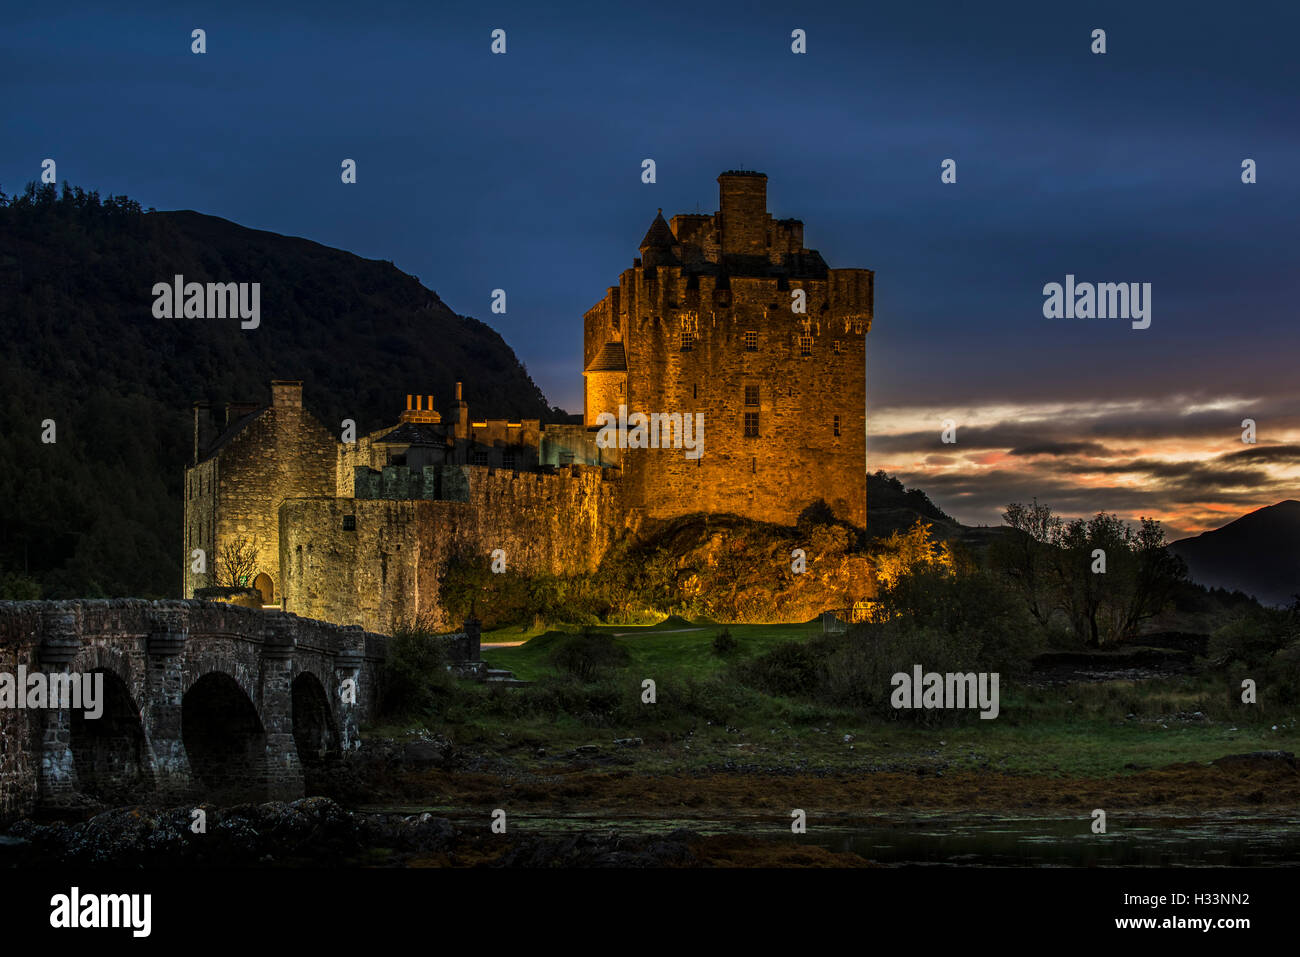 Castillo de Eilean Donan iluminado por la noche en Loch Duich, Ross y Cromarty, Western Highlands de Escocia, Reino Unido Foto de stock